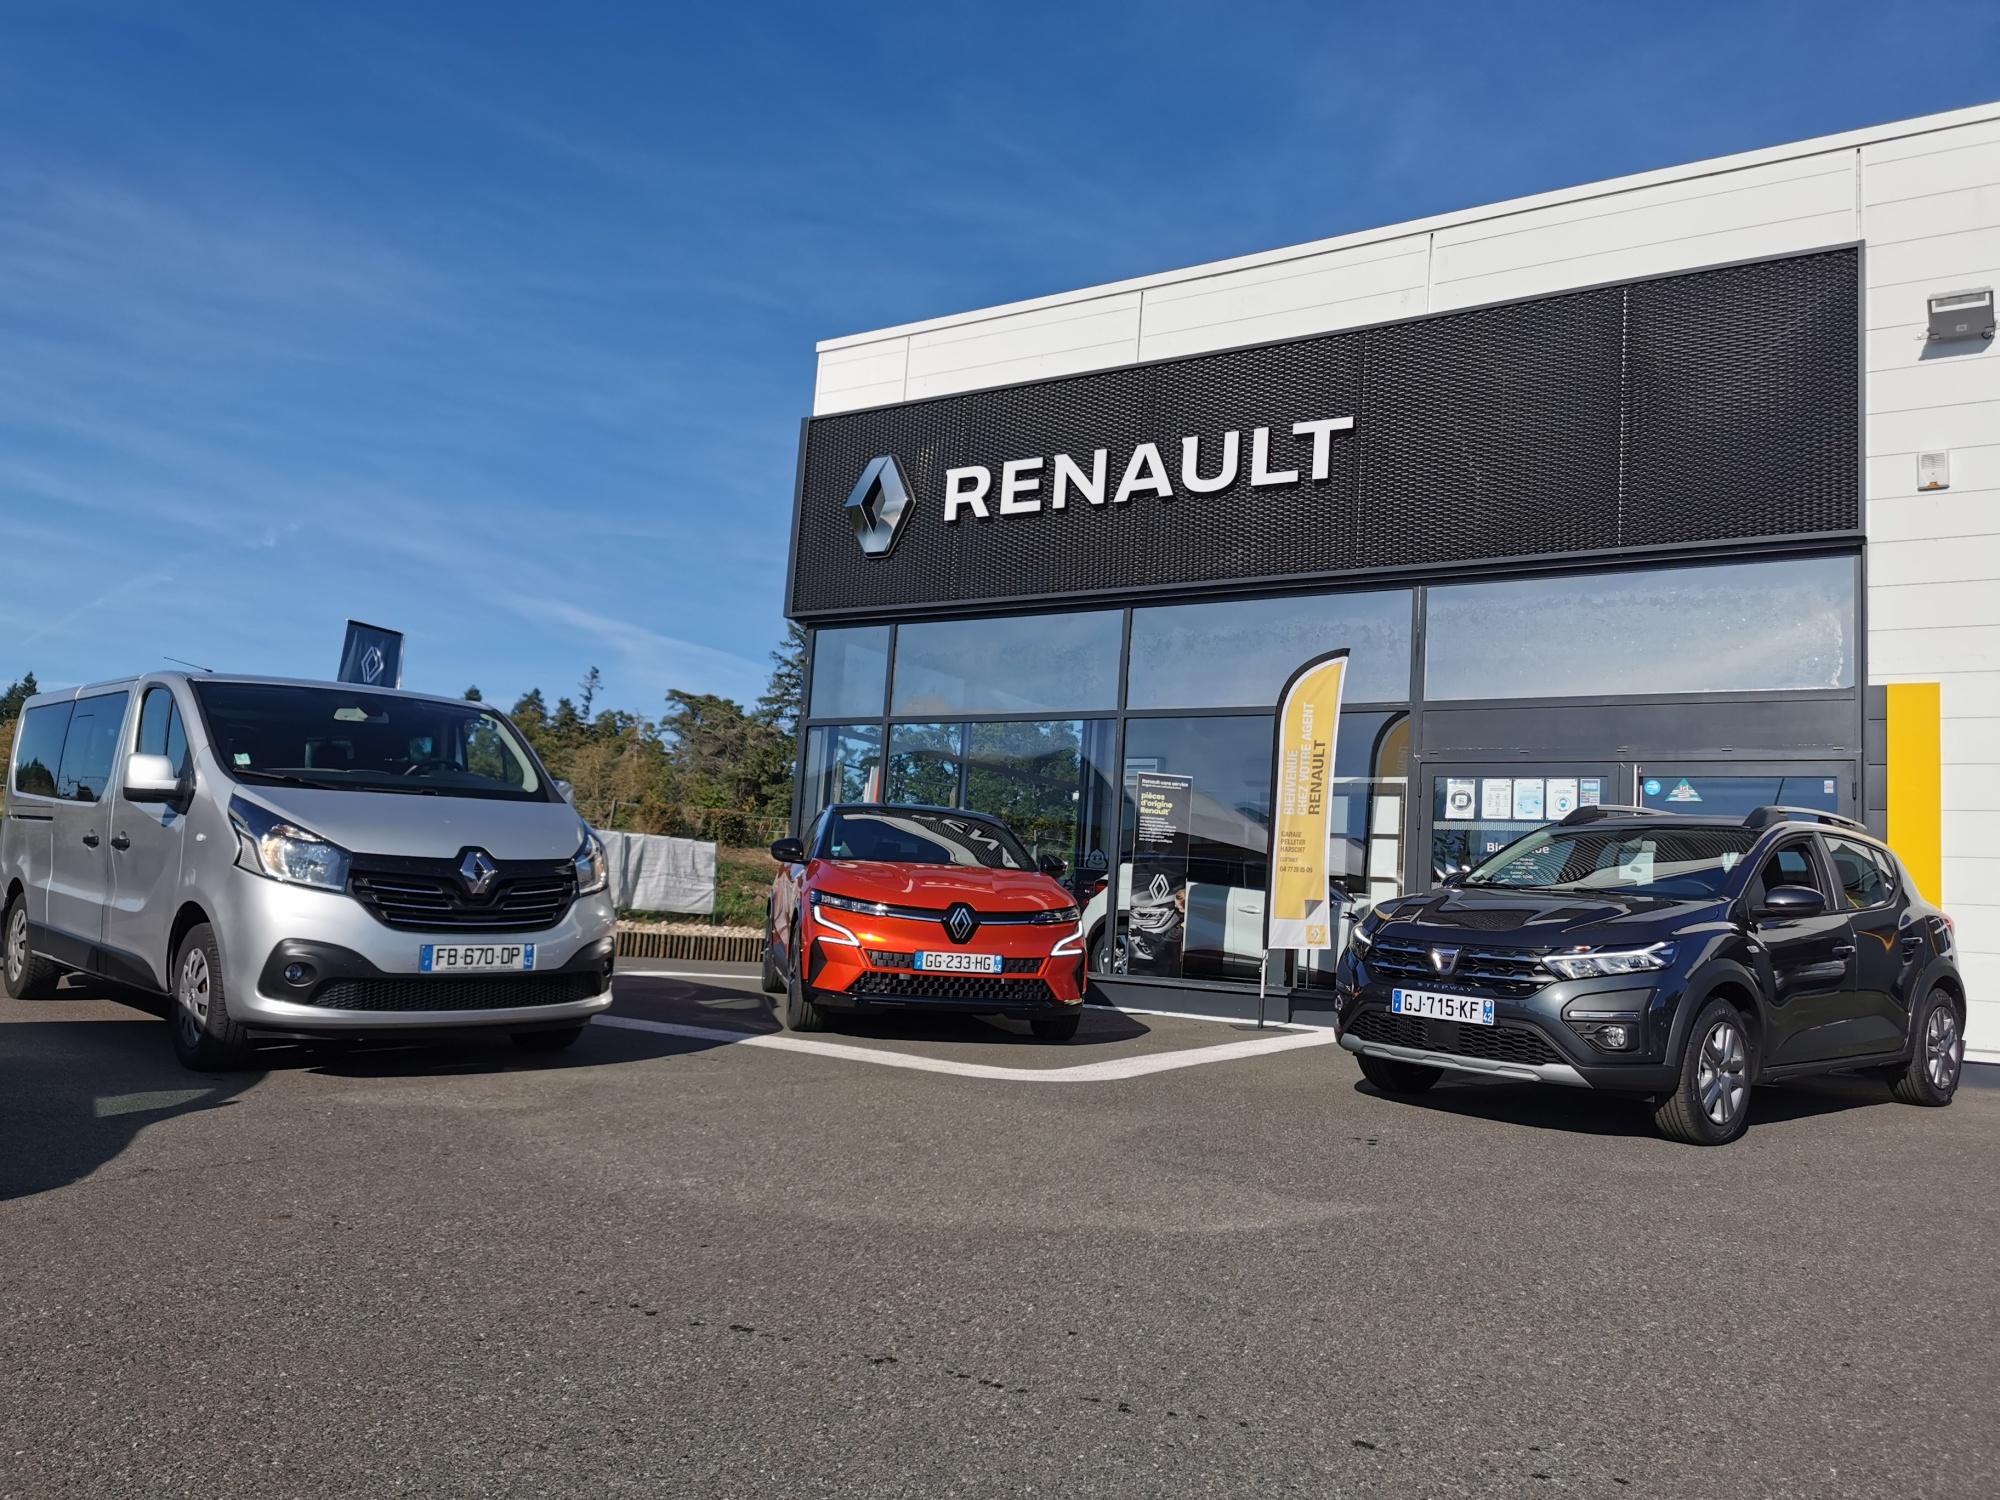 Renault Garage Pelletier Harscoet Cottance